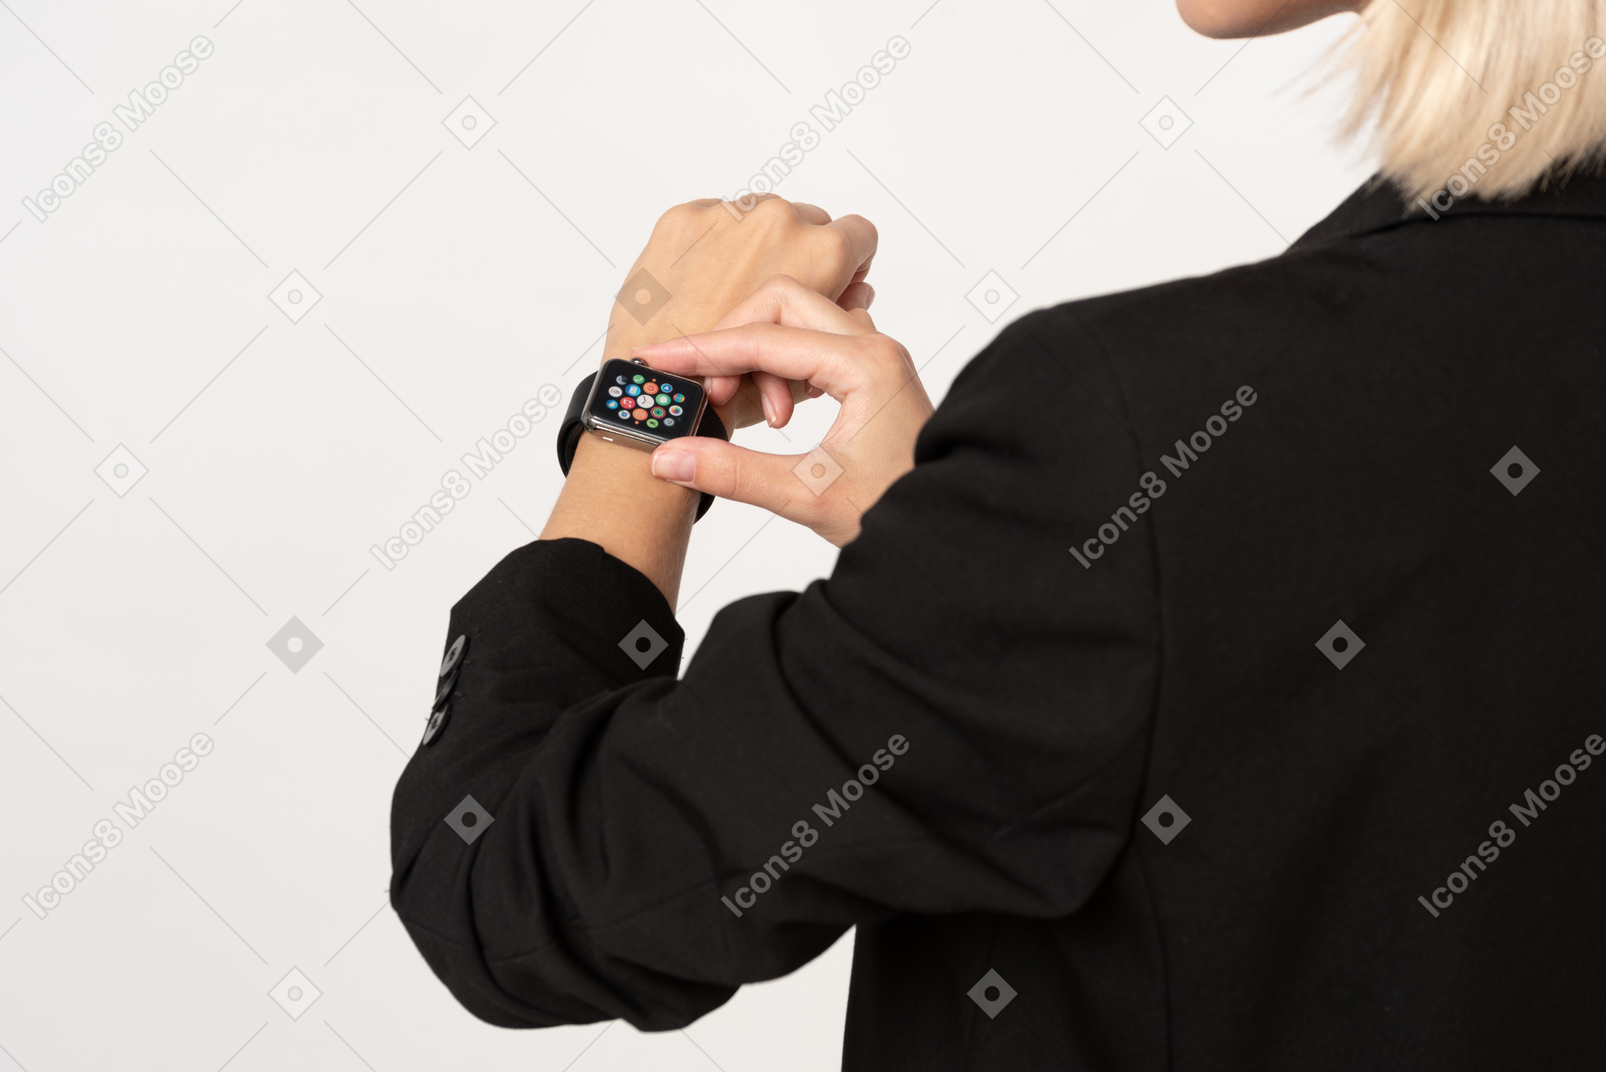 Eine kurze aufnahme einer jungen frau mit smartwatch